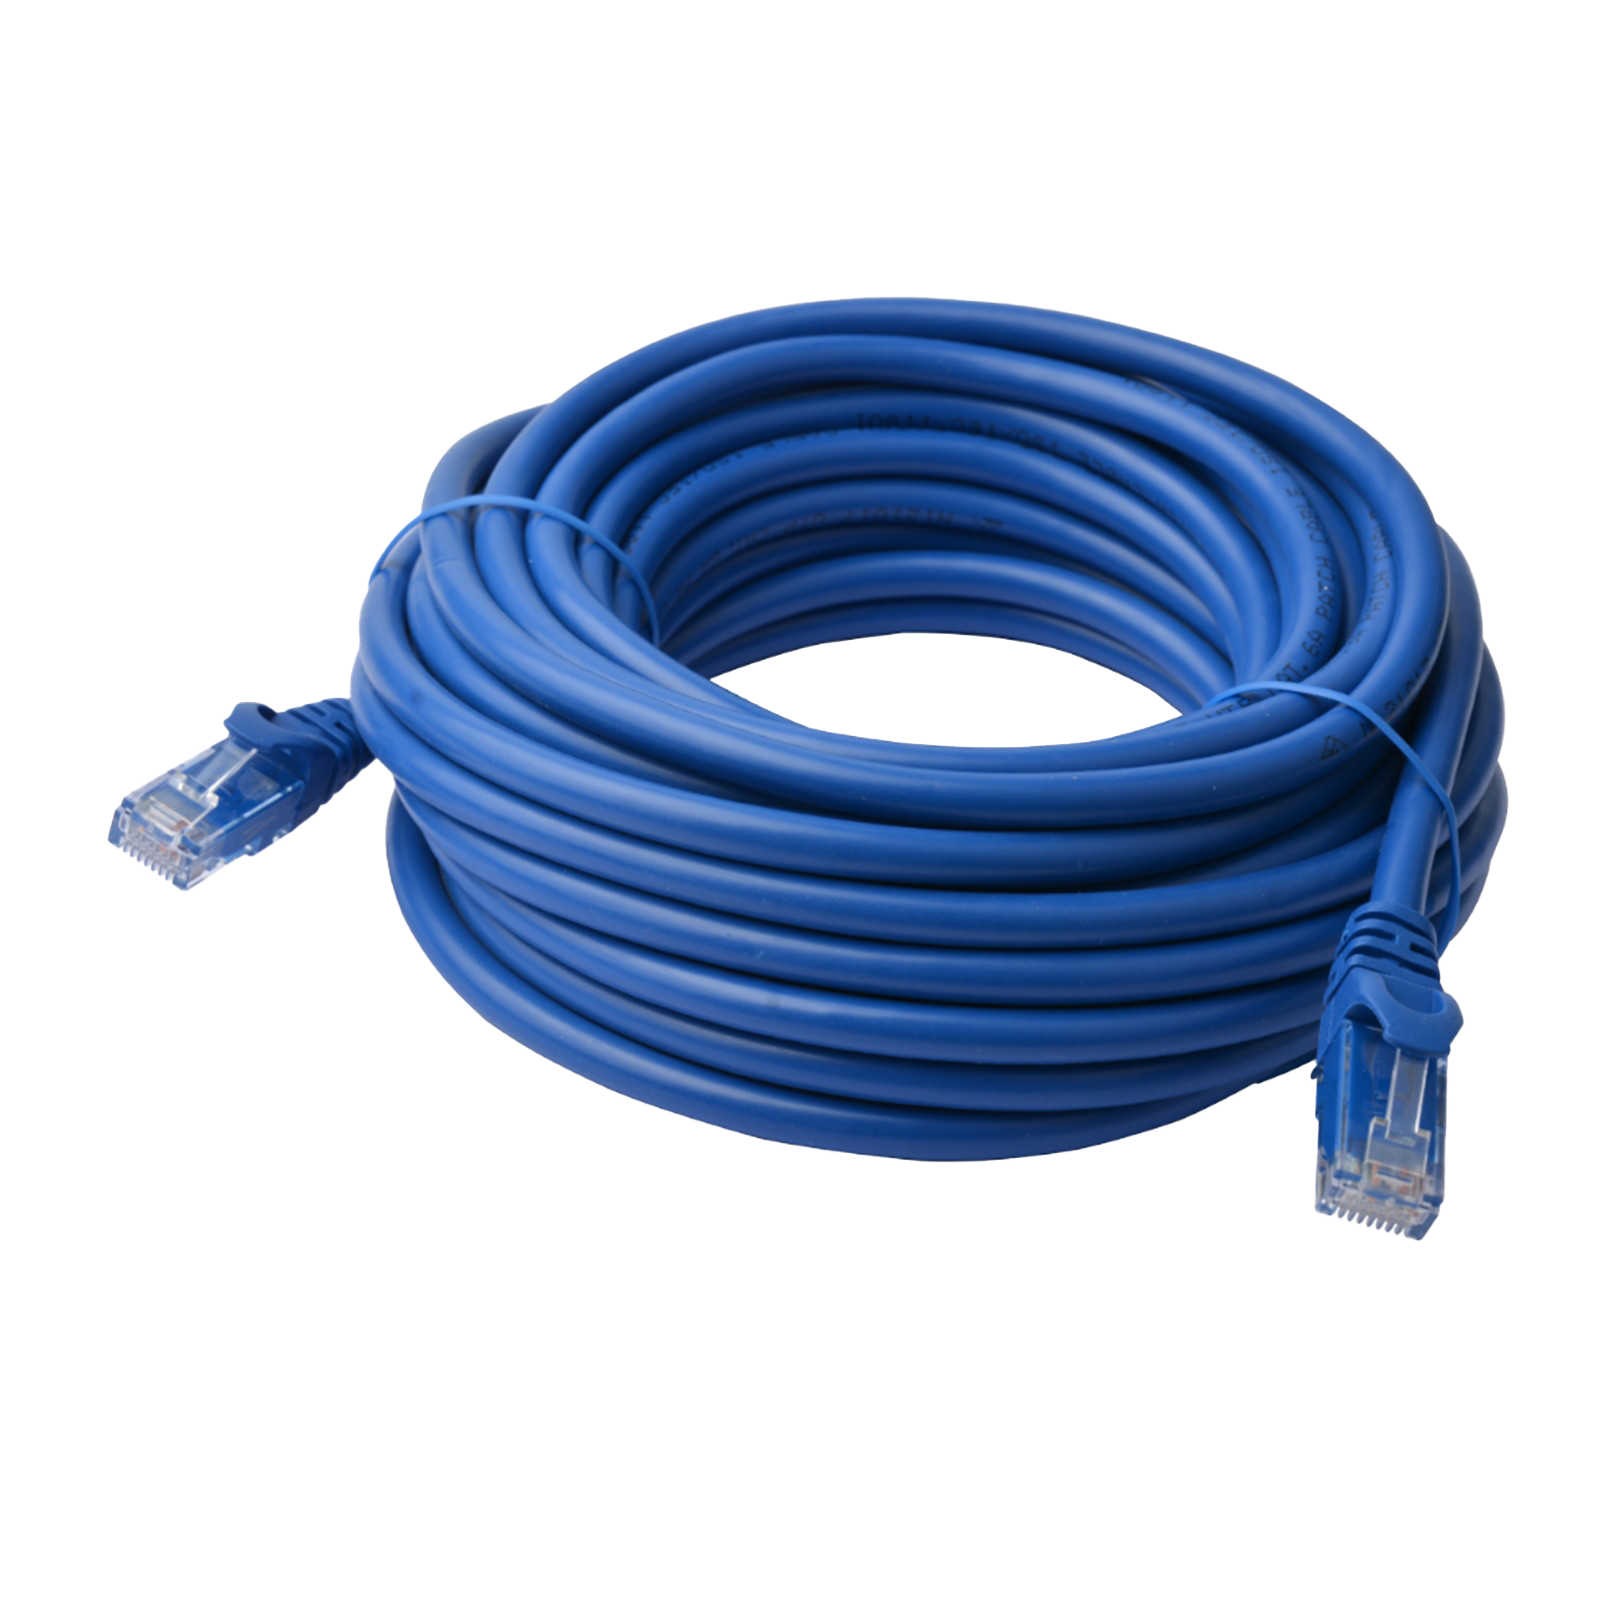 Câble Ethernet bleu PNG Image haute qualité